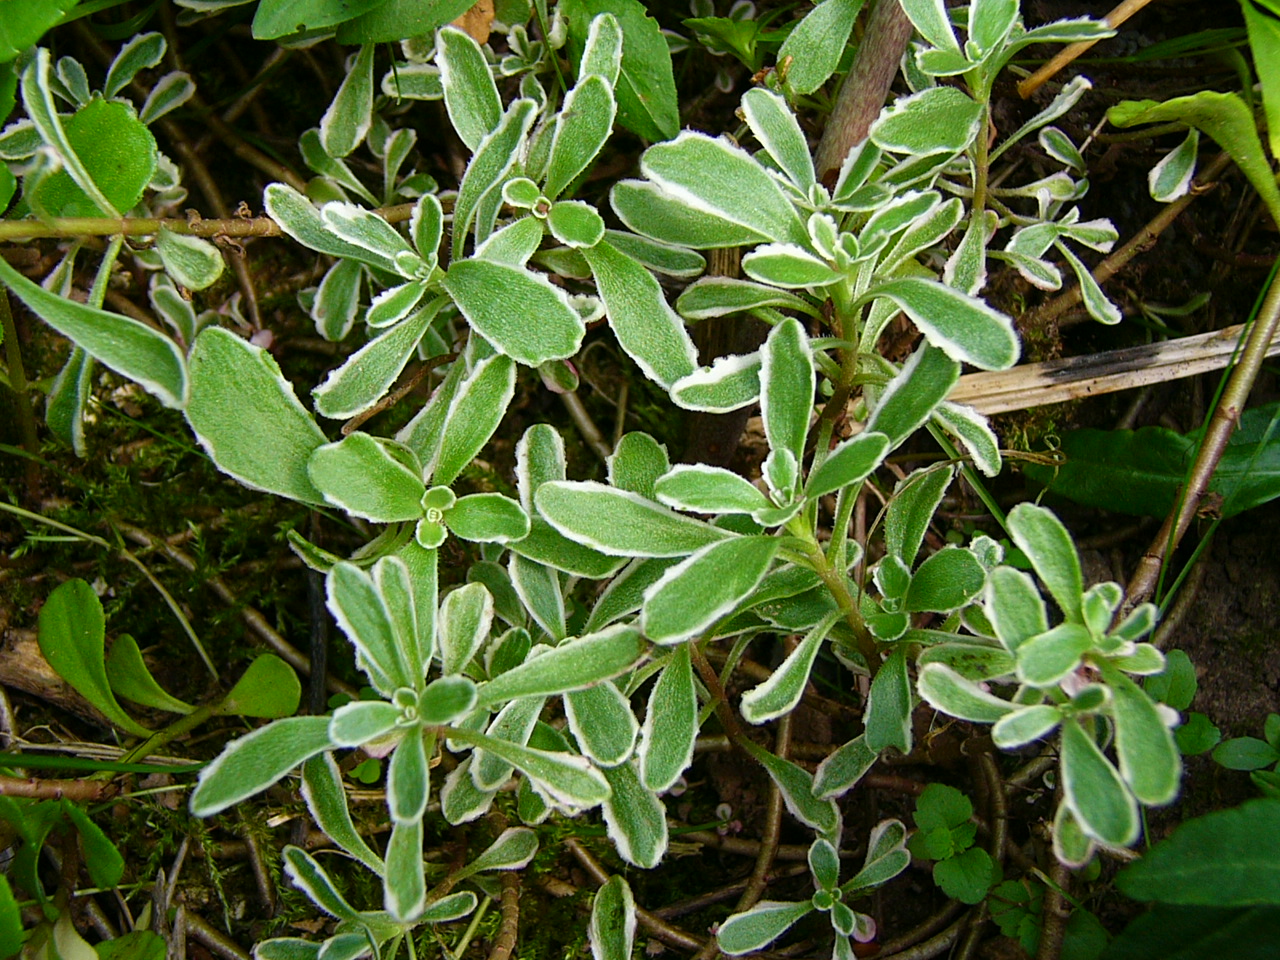 Sedum floriferum